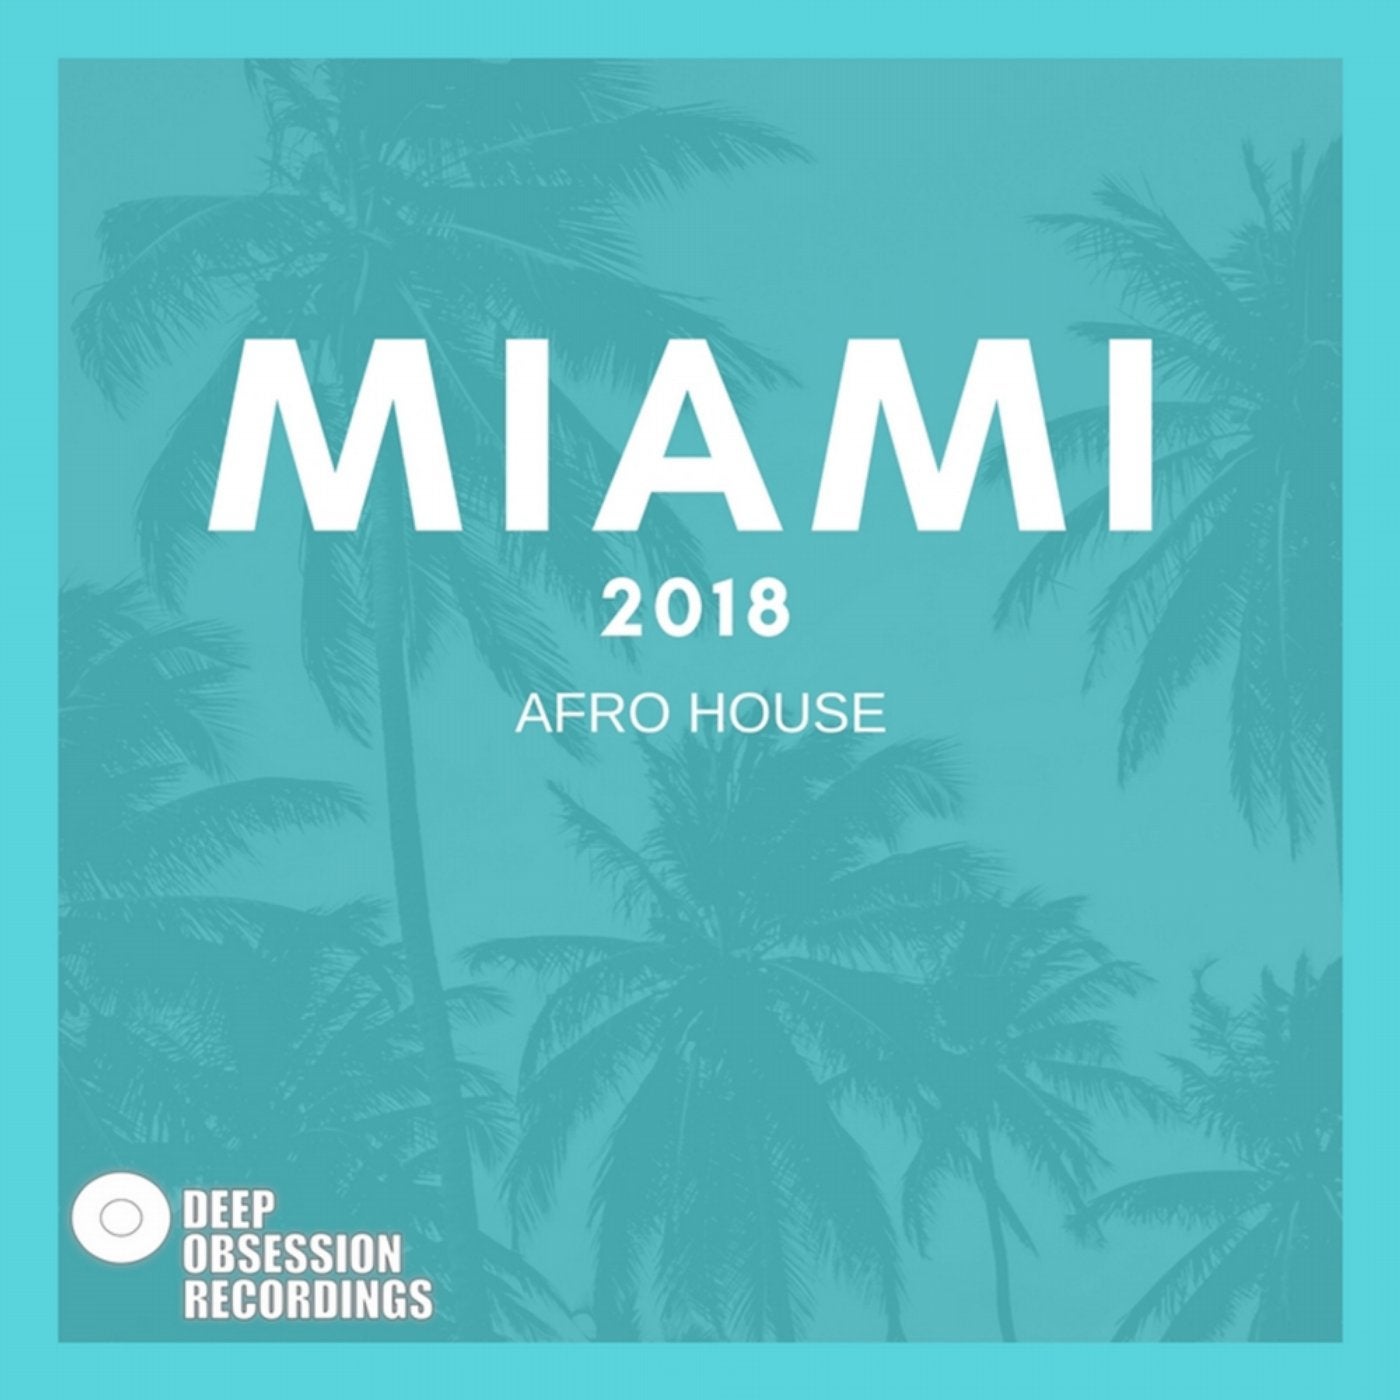 Miami 2018 Afro House